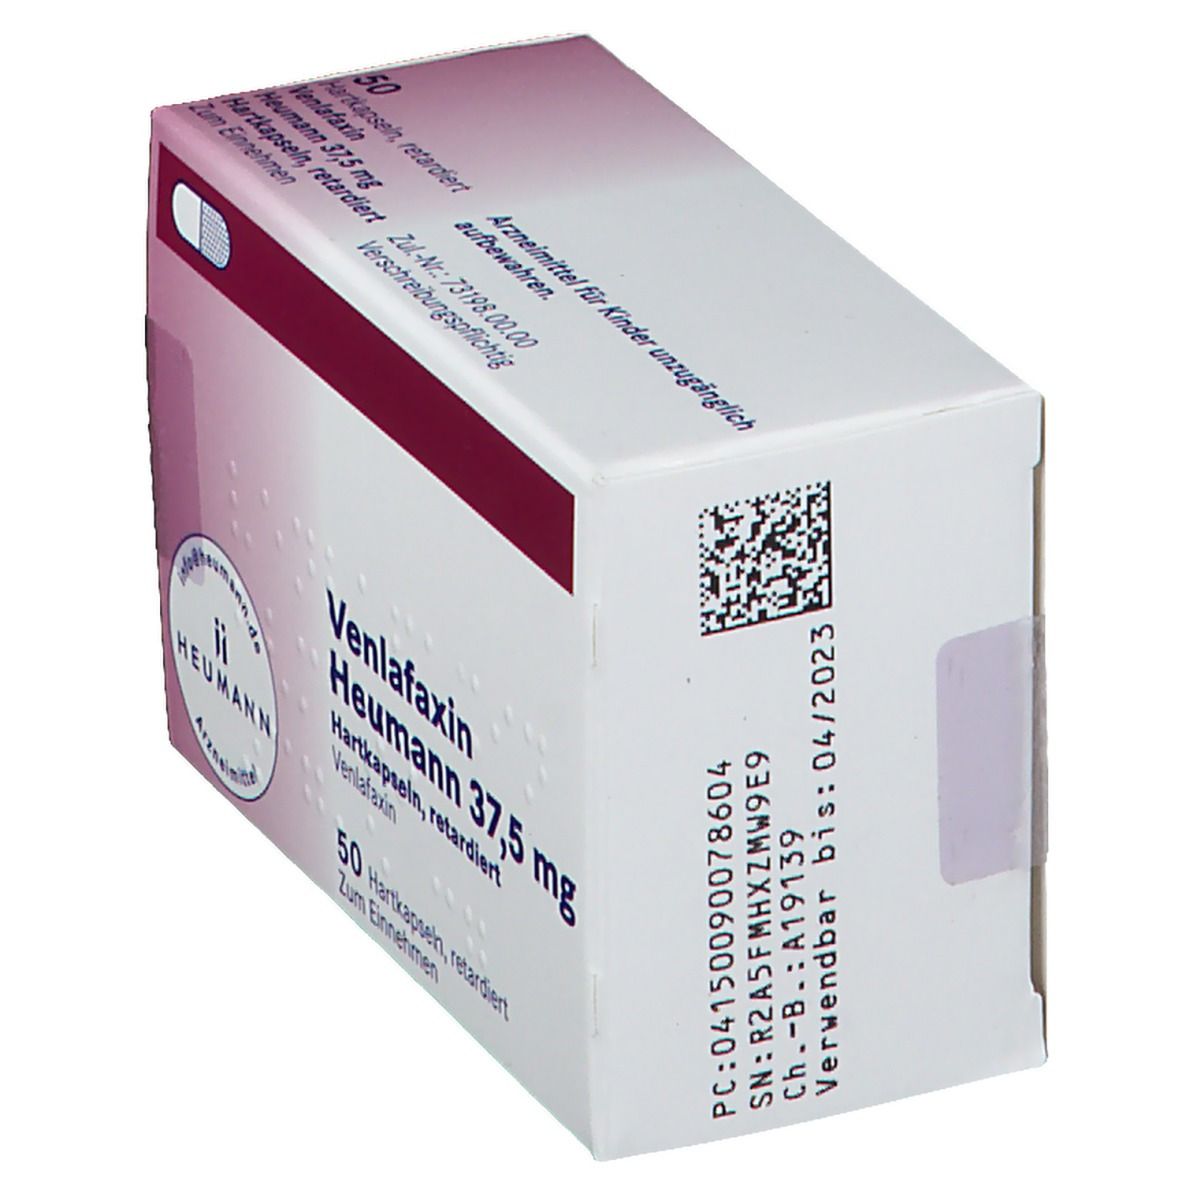 Venlafaxin Heumann 37,5 mg Hartkapseln, retardiert